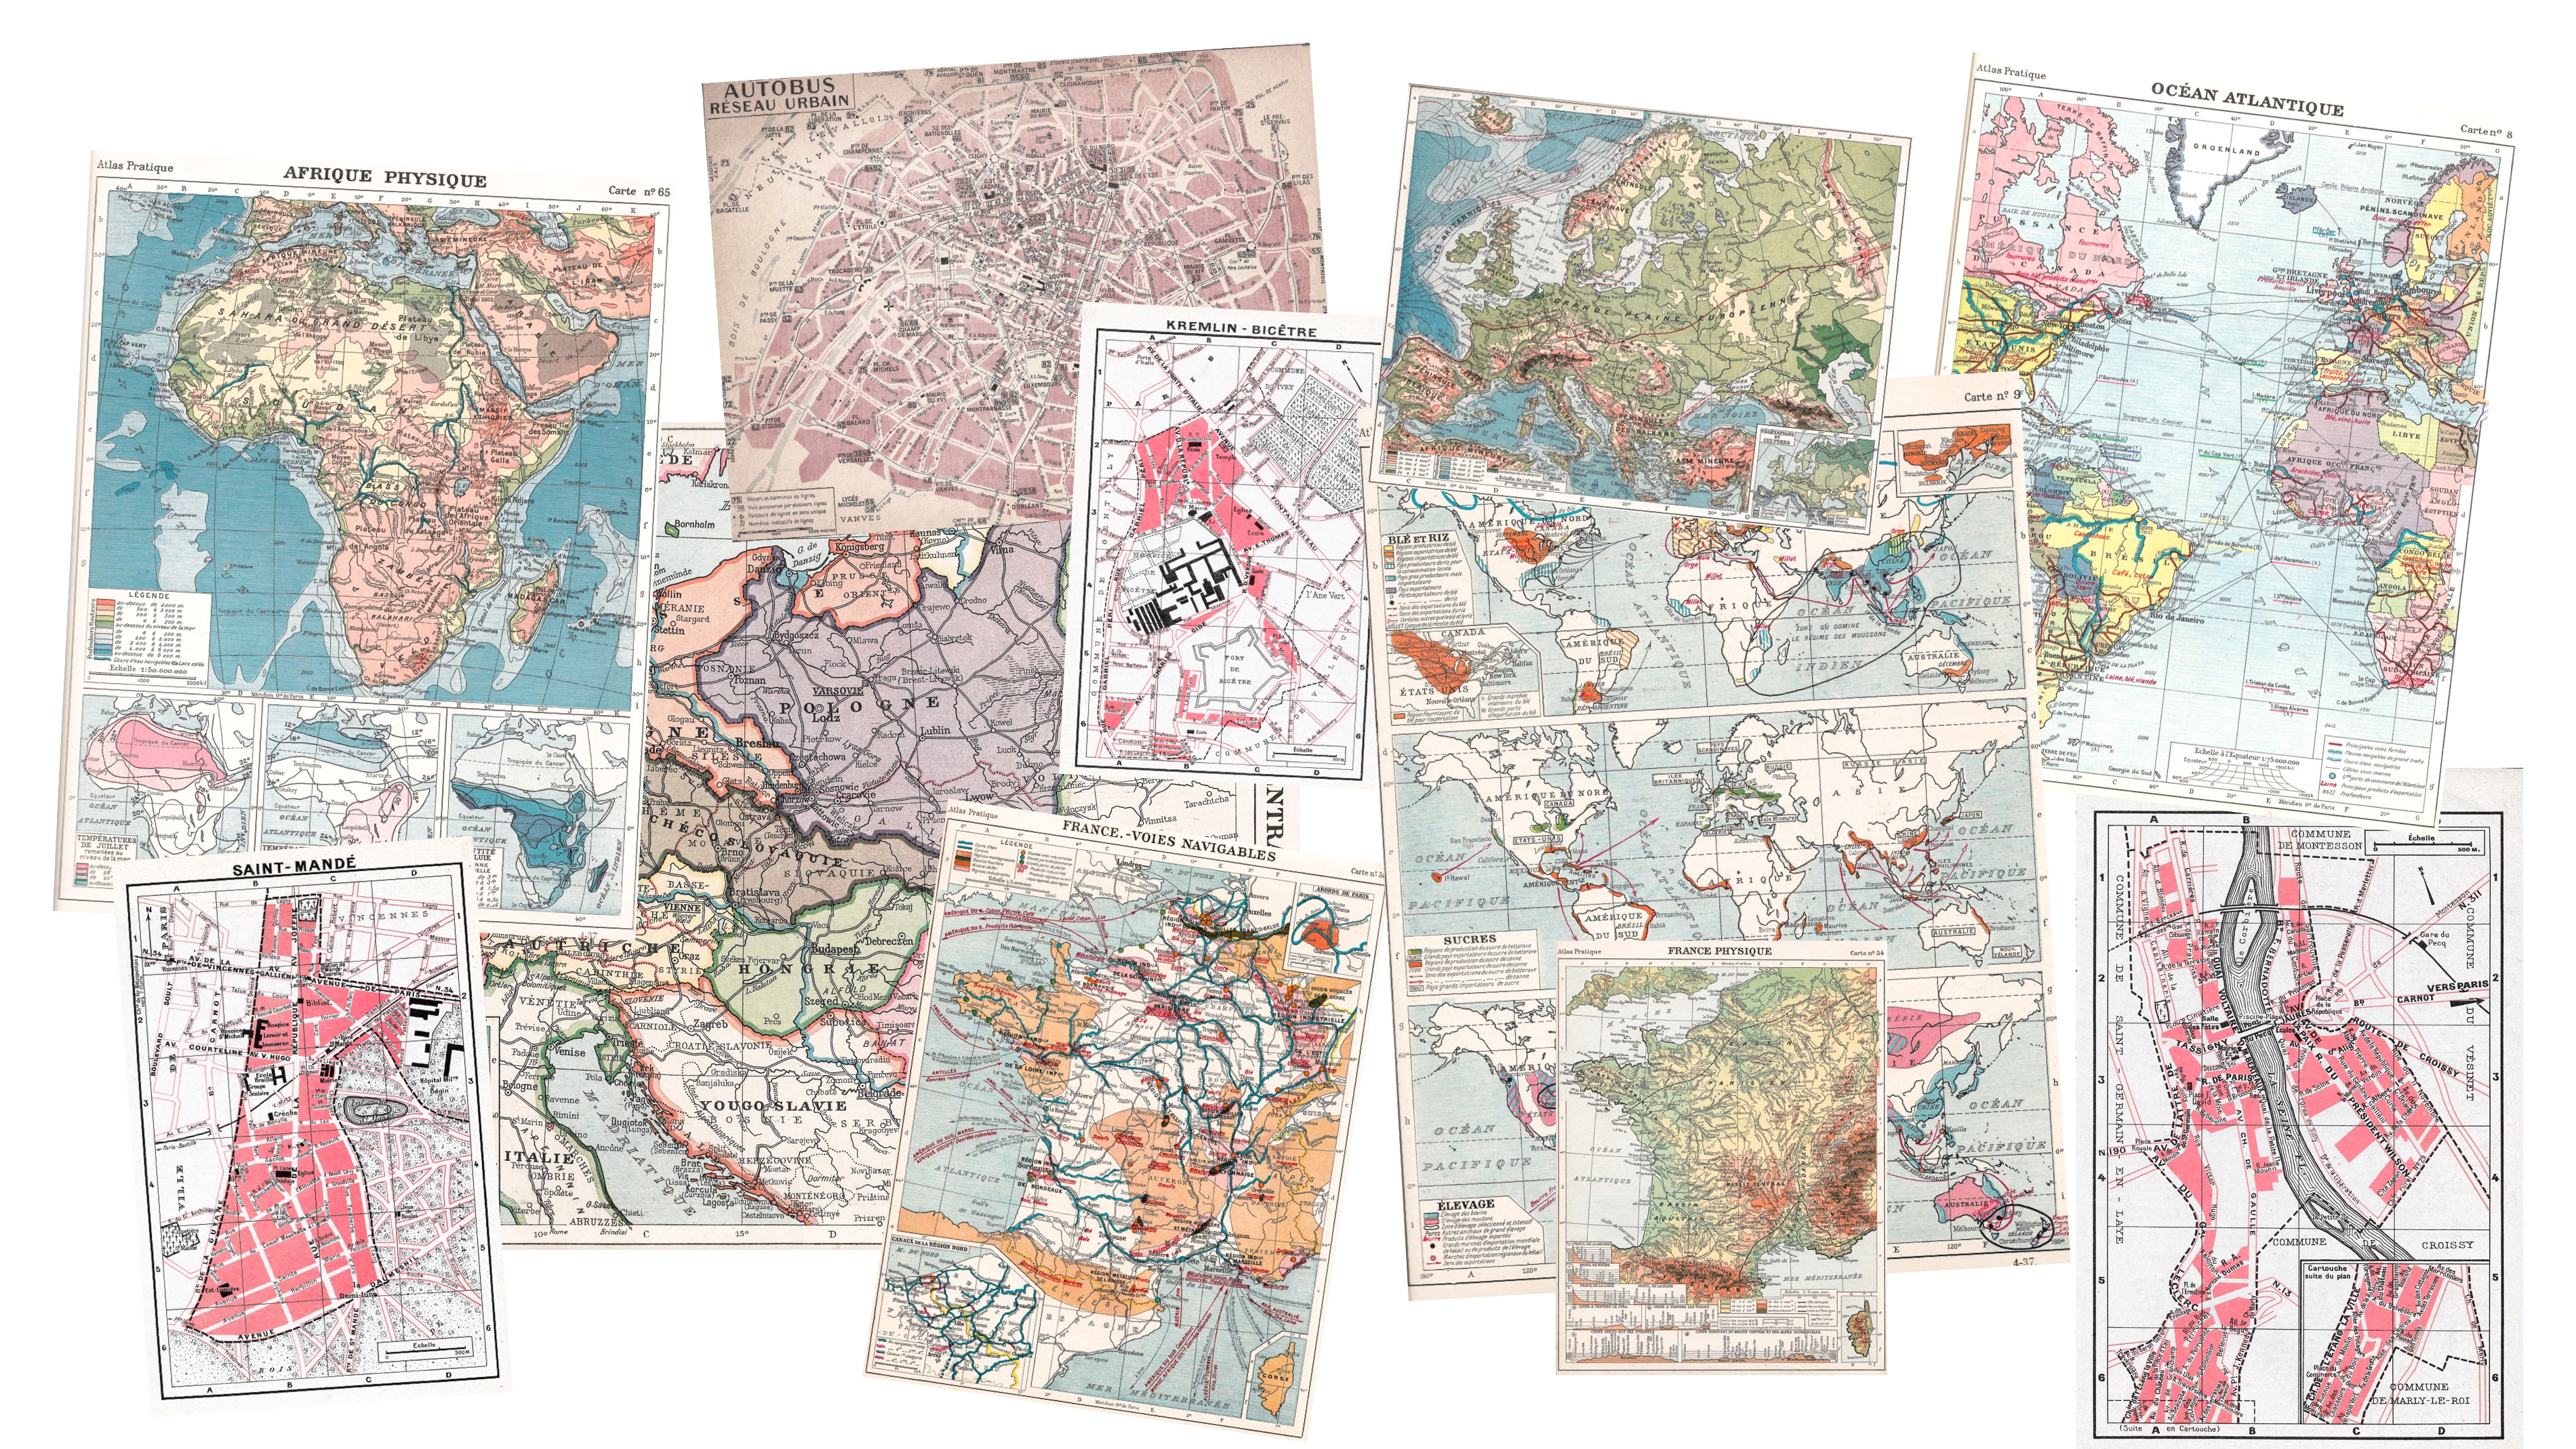 Cartes géographiques et plans anciens vintages pour encadrer